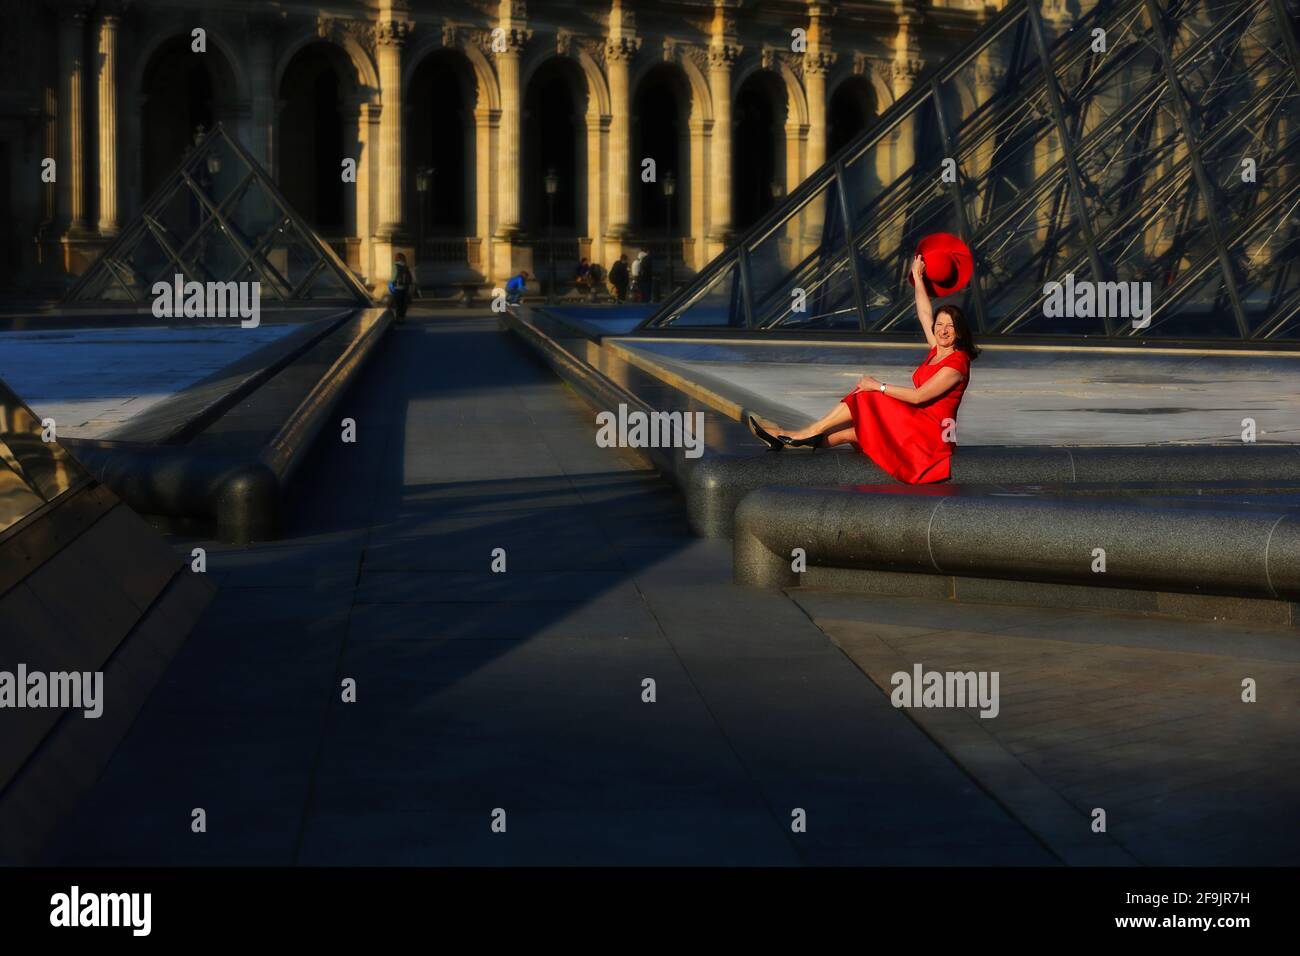 Paris, Frankreich, Louvre, sonniger Innenhof und Glaspyramide des Louvre in Paris in Frankreich mit sitzender Frau mit rotem Kleid und rotem Hut Stock Photo